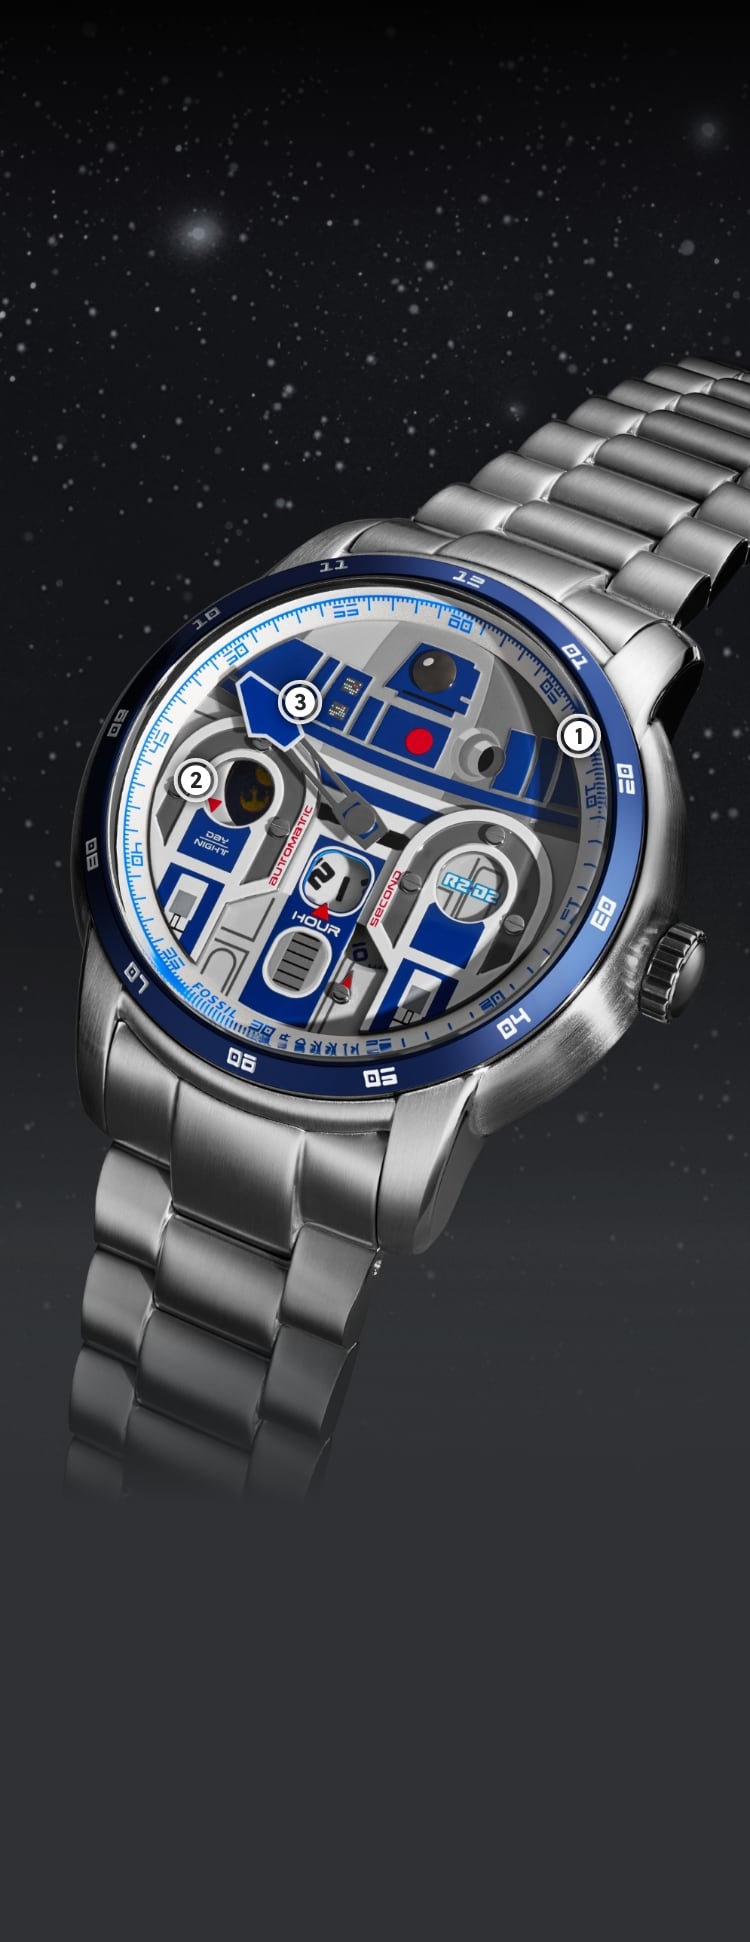 Primo piano di un orologio color argento con un’applicazione tridimensionale di R2-D2 sul quadrante